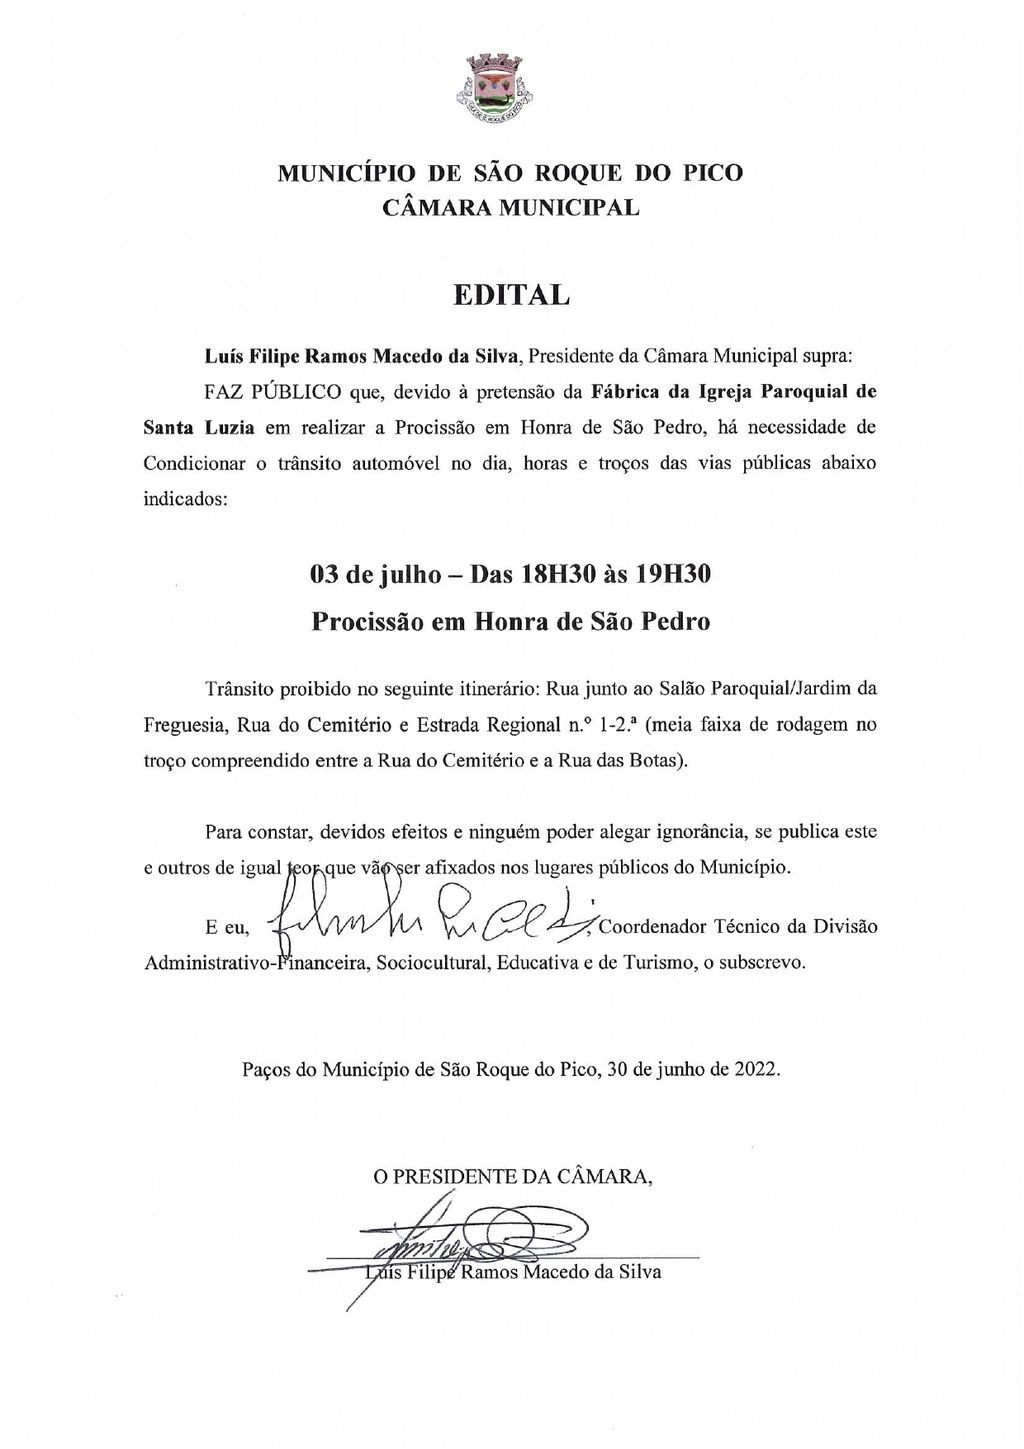  3 de julho - Procissão em Honra de São Pedro